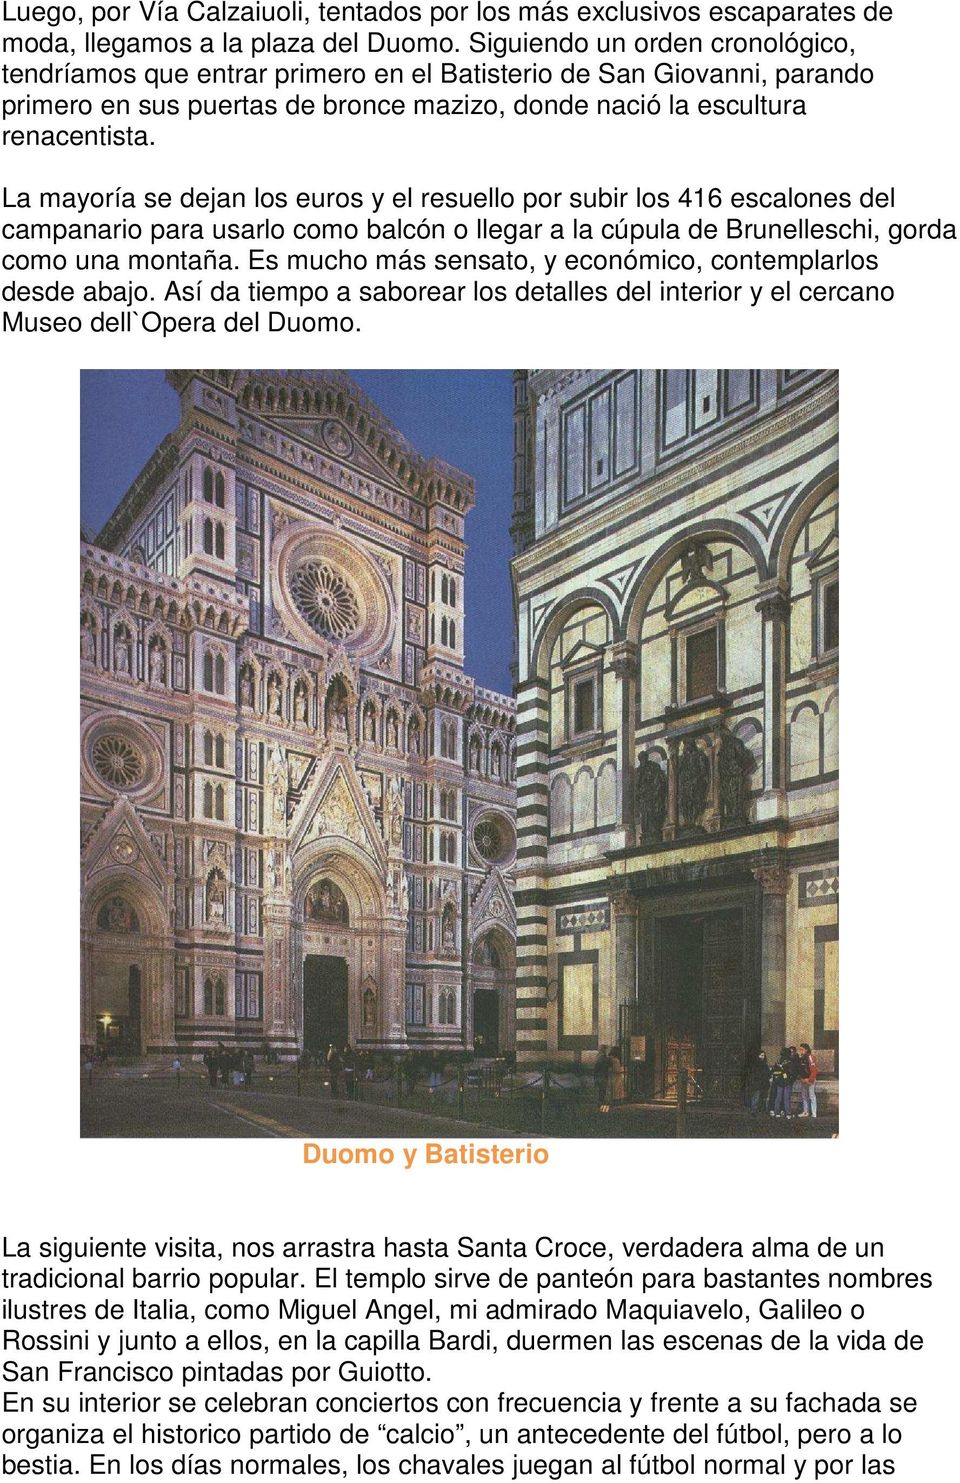 La mayoría se dejan los euros y el resuello por subir los 416 escalones del campanario para usarlo como balcón o llegar a la cúpula de Brunelleschi, gorda como una montaña.